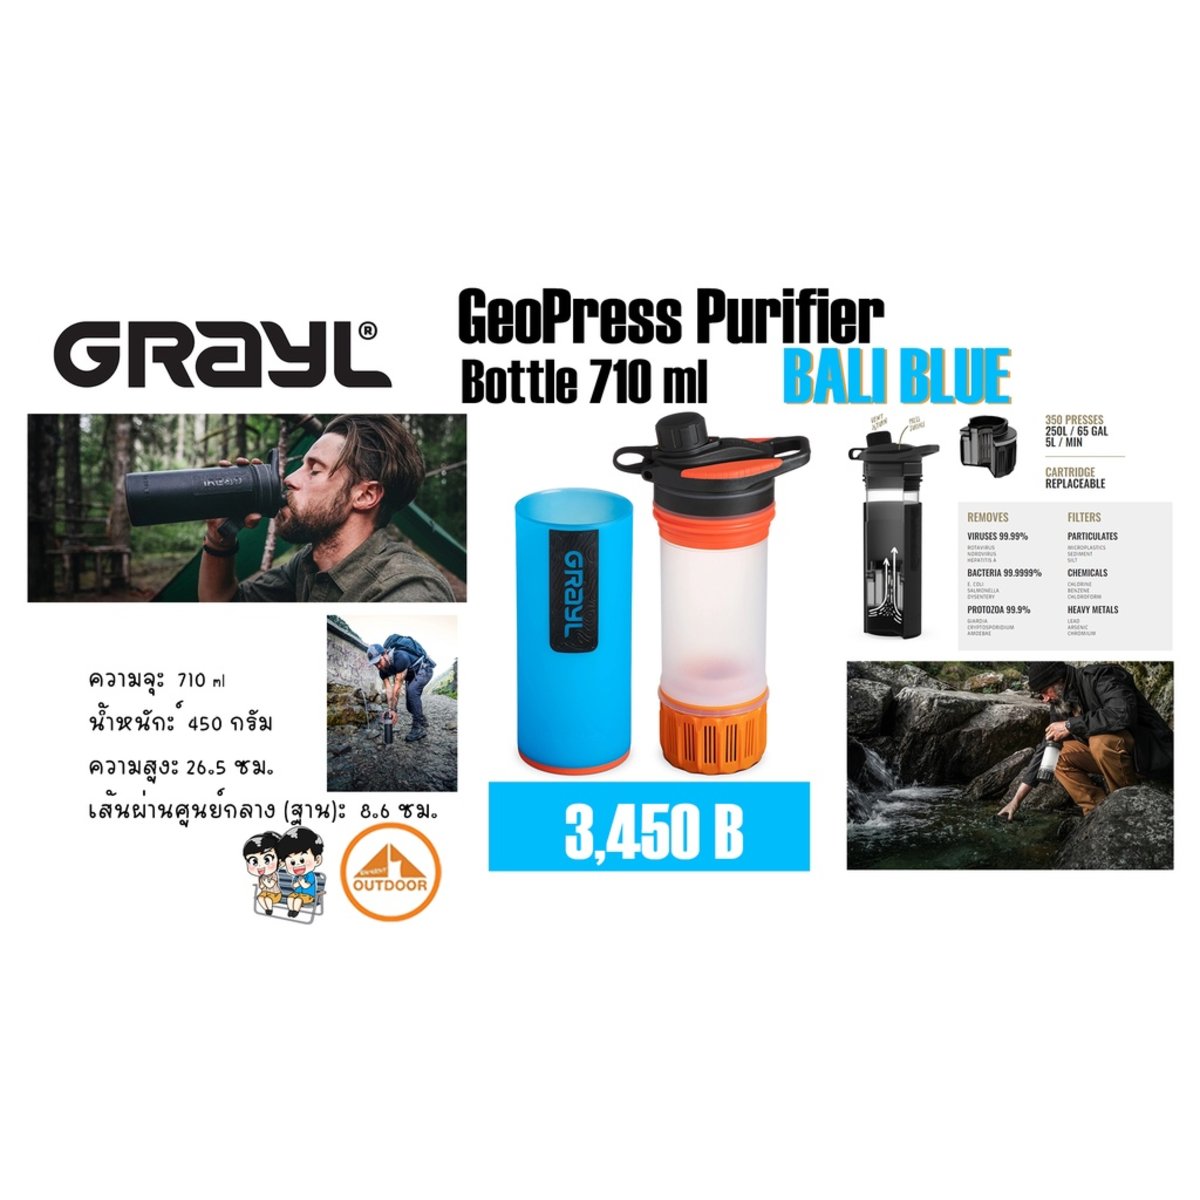 Grayl - Geopress Purifier Bottle - Bali Blue